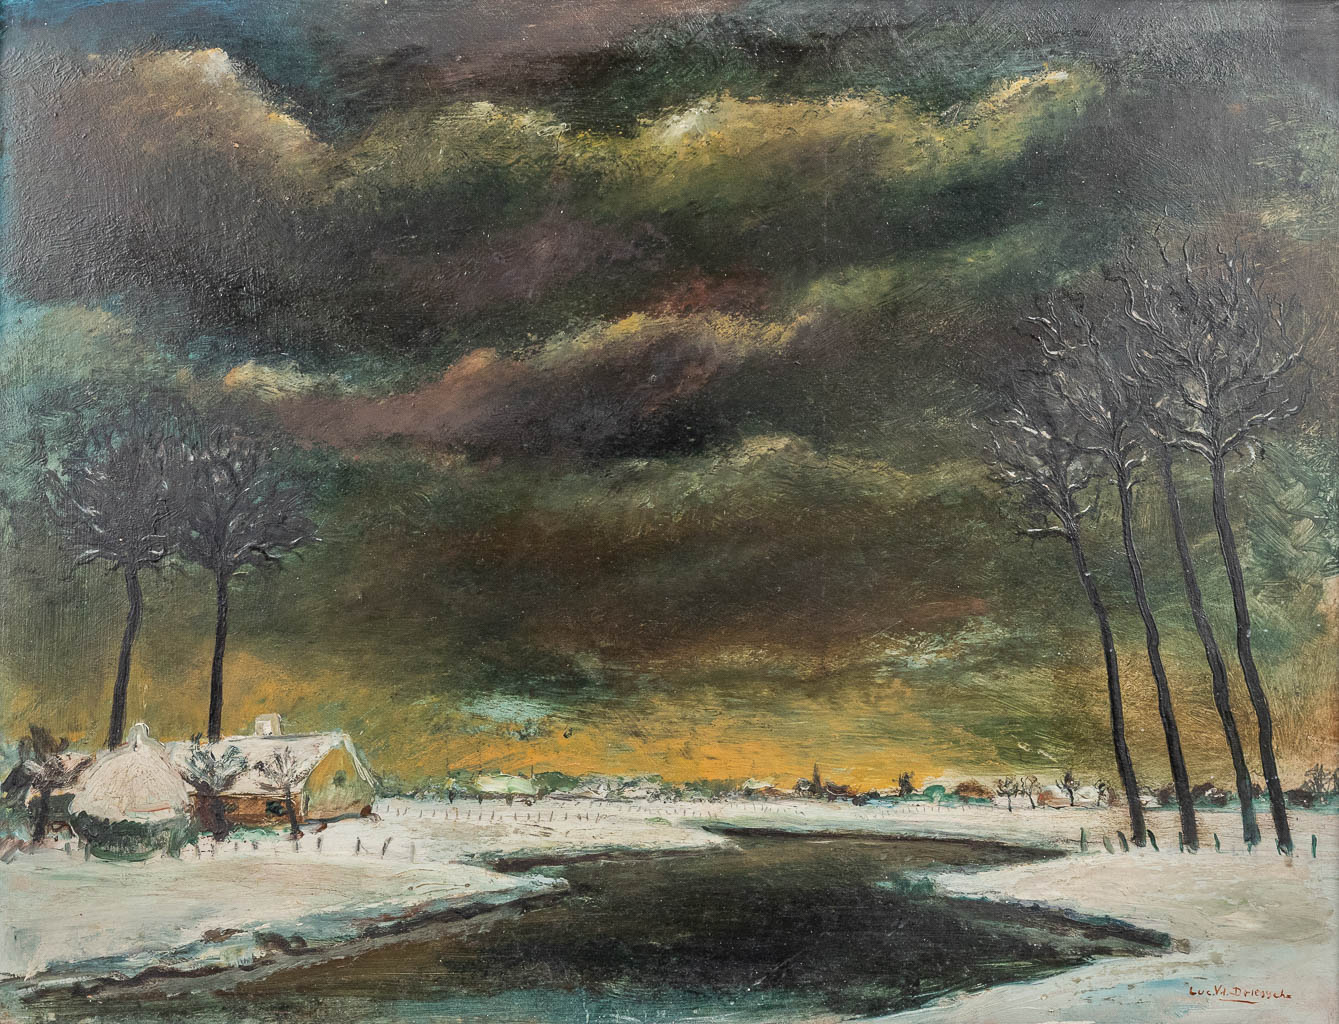 Lucien VAN DEN DRIESSCHE (1926-1991) '2 landscapes' oil on canvas. (61 x 46,5 cm)